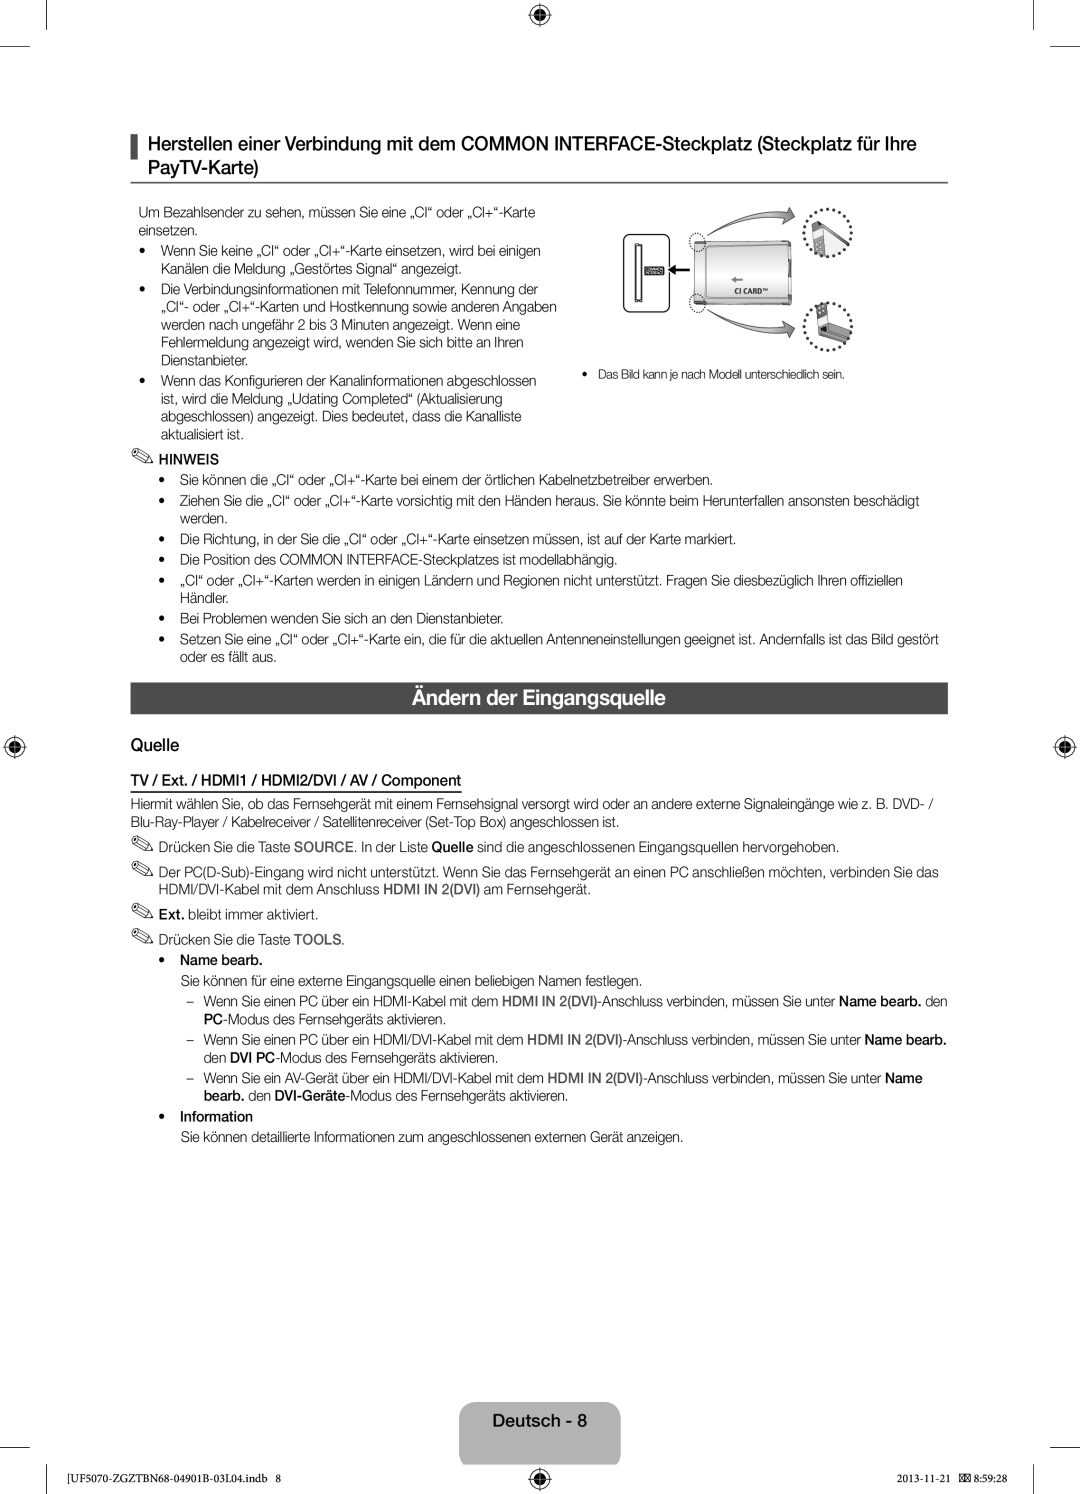 Samsung UE46F5000AWXZF manual Ändern der Eingangsquelle, Quelle, Deutsch, TV / Ext. / HDMI1 / HDMI2/DVI / AV / Component 